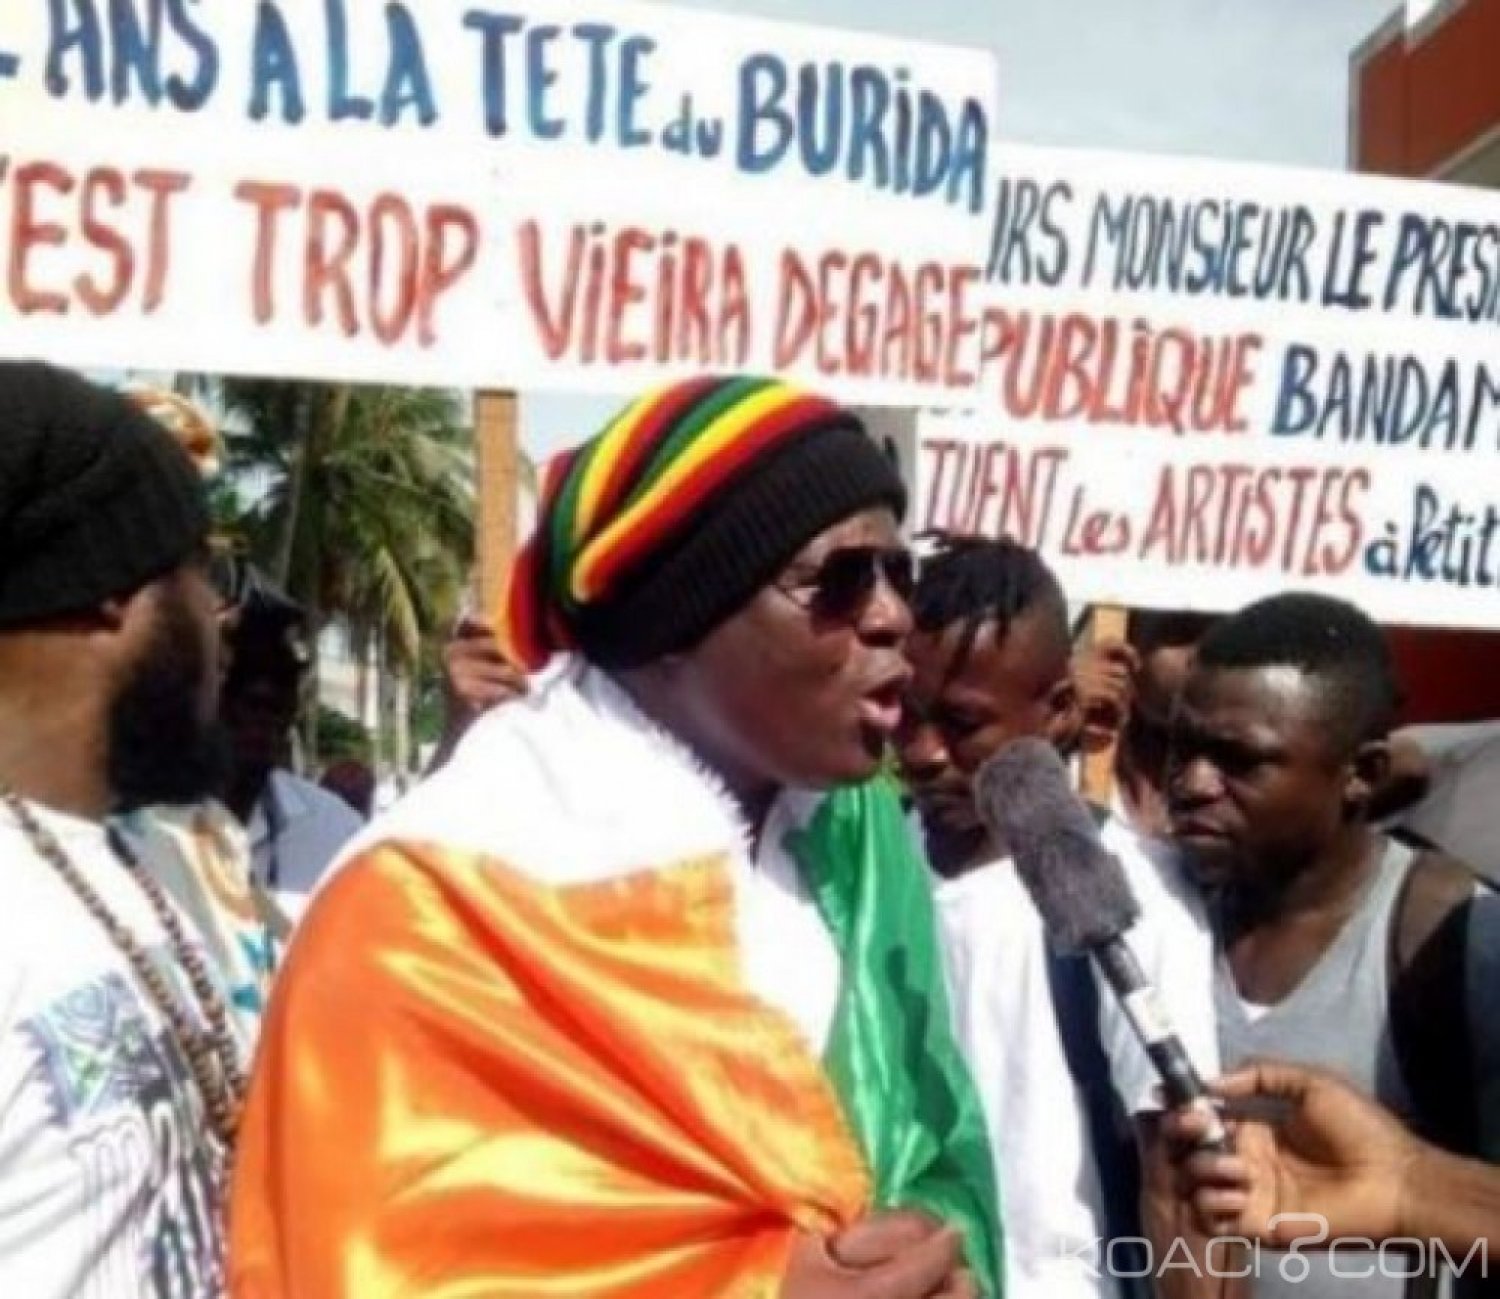 Côte d'Ivoire : Crise au Burida, l'audit achevé et  l'organisation des Journées de concertation de l'ensemble des artistes annoncée